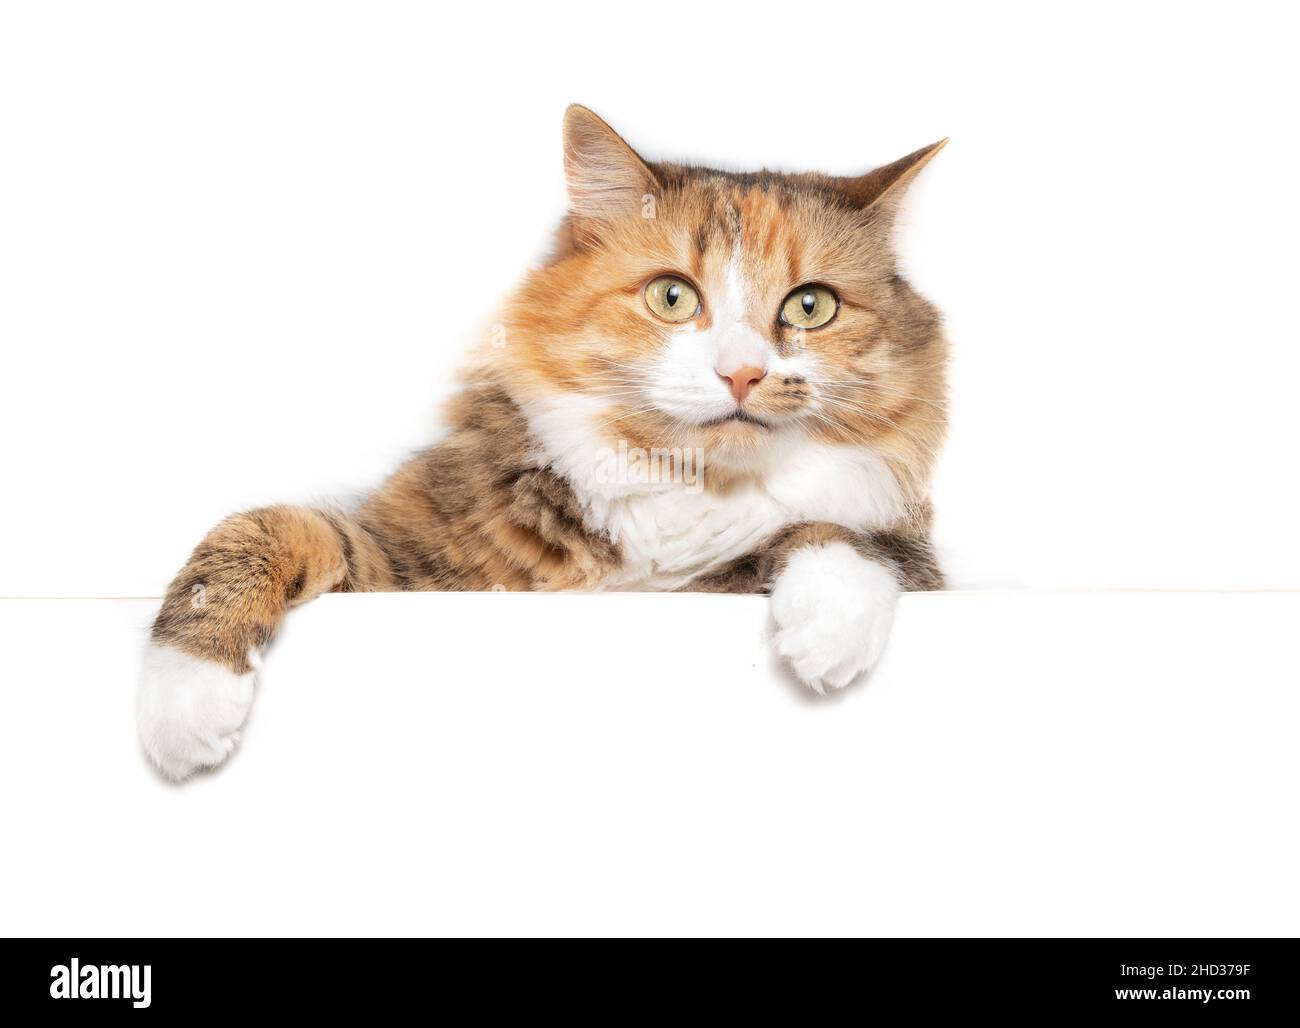 Gato aislado y esponjoso colgando o colgando sobre una mesa blanca mirando la cámara. Lindo pelo largo calico o gatito torbie hembra con asimet llamativo Foto de stock